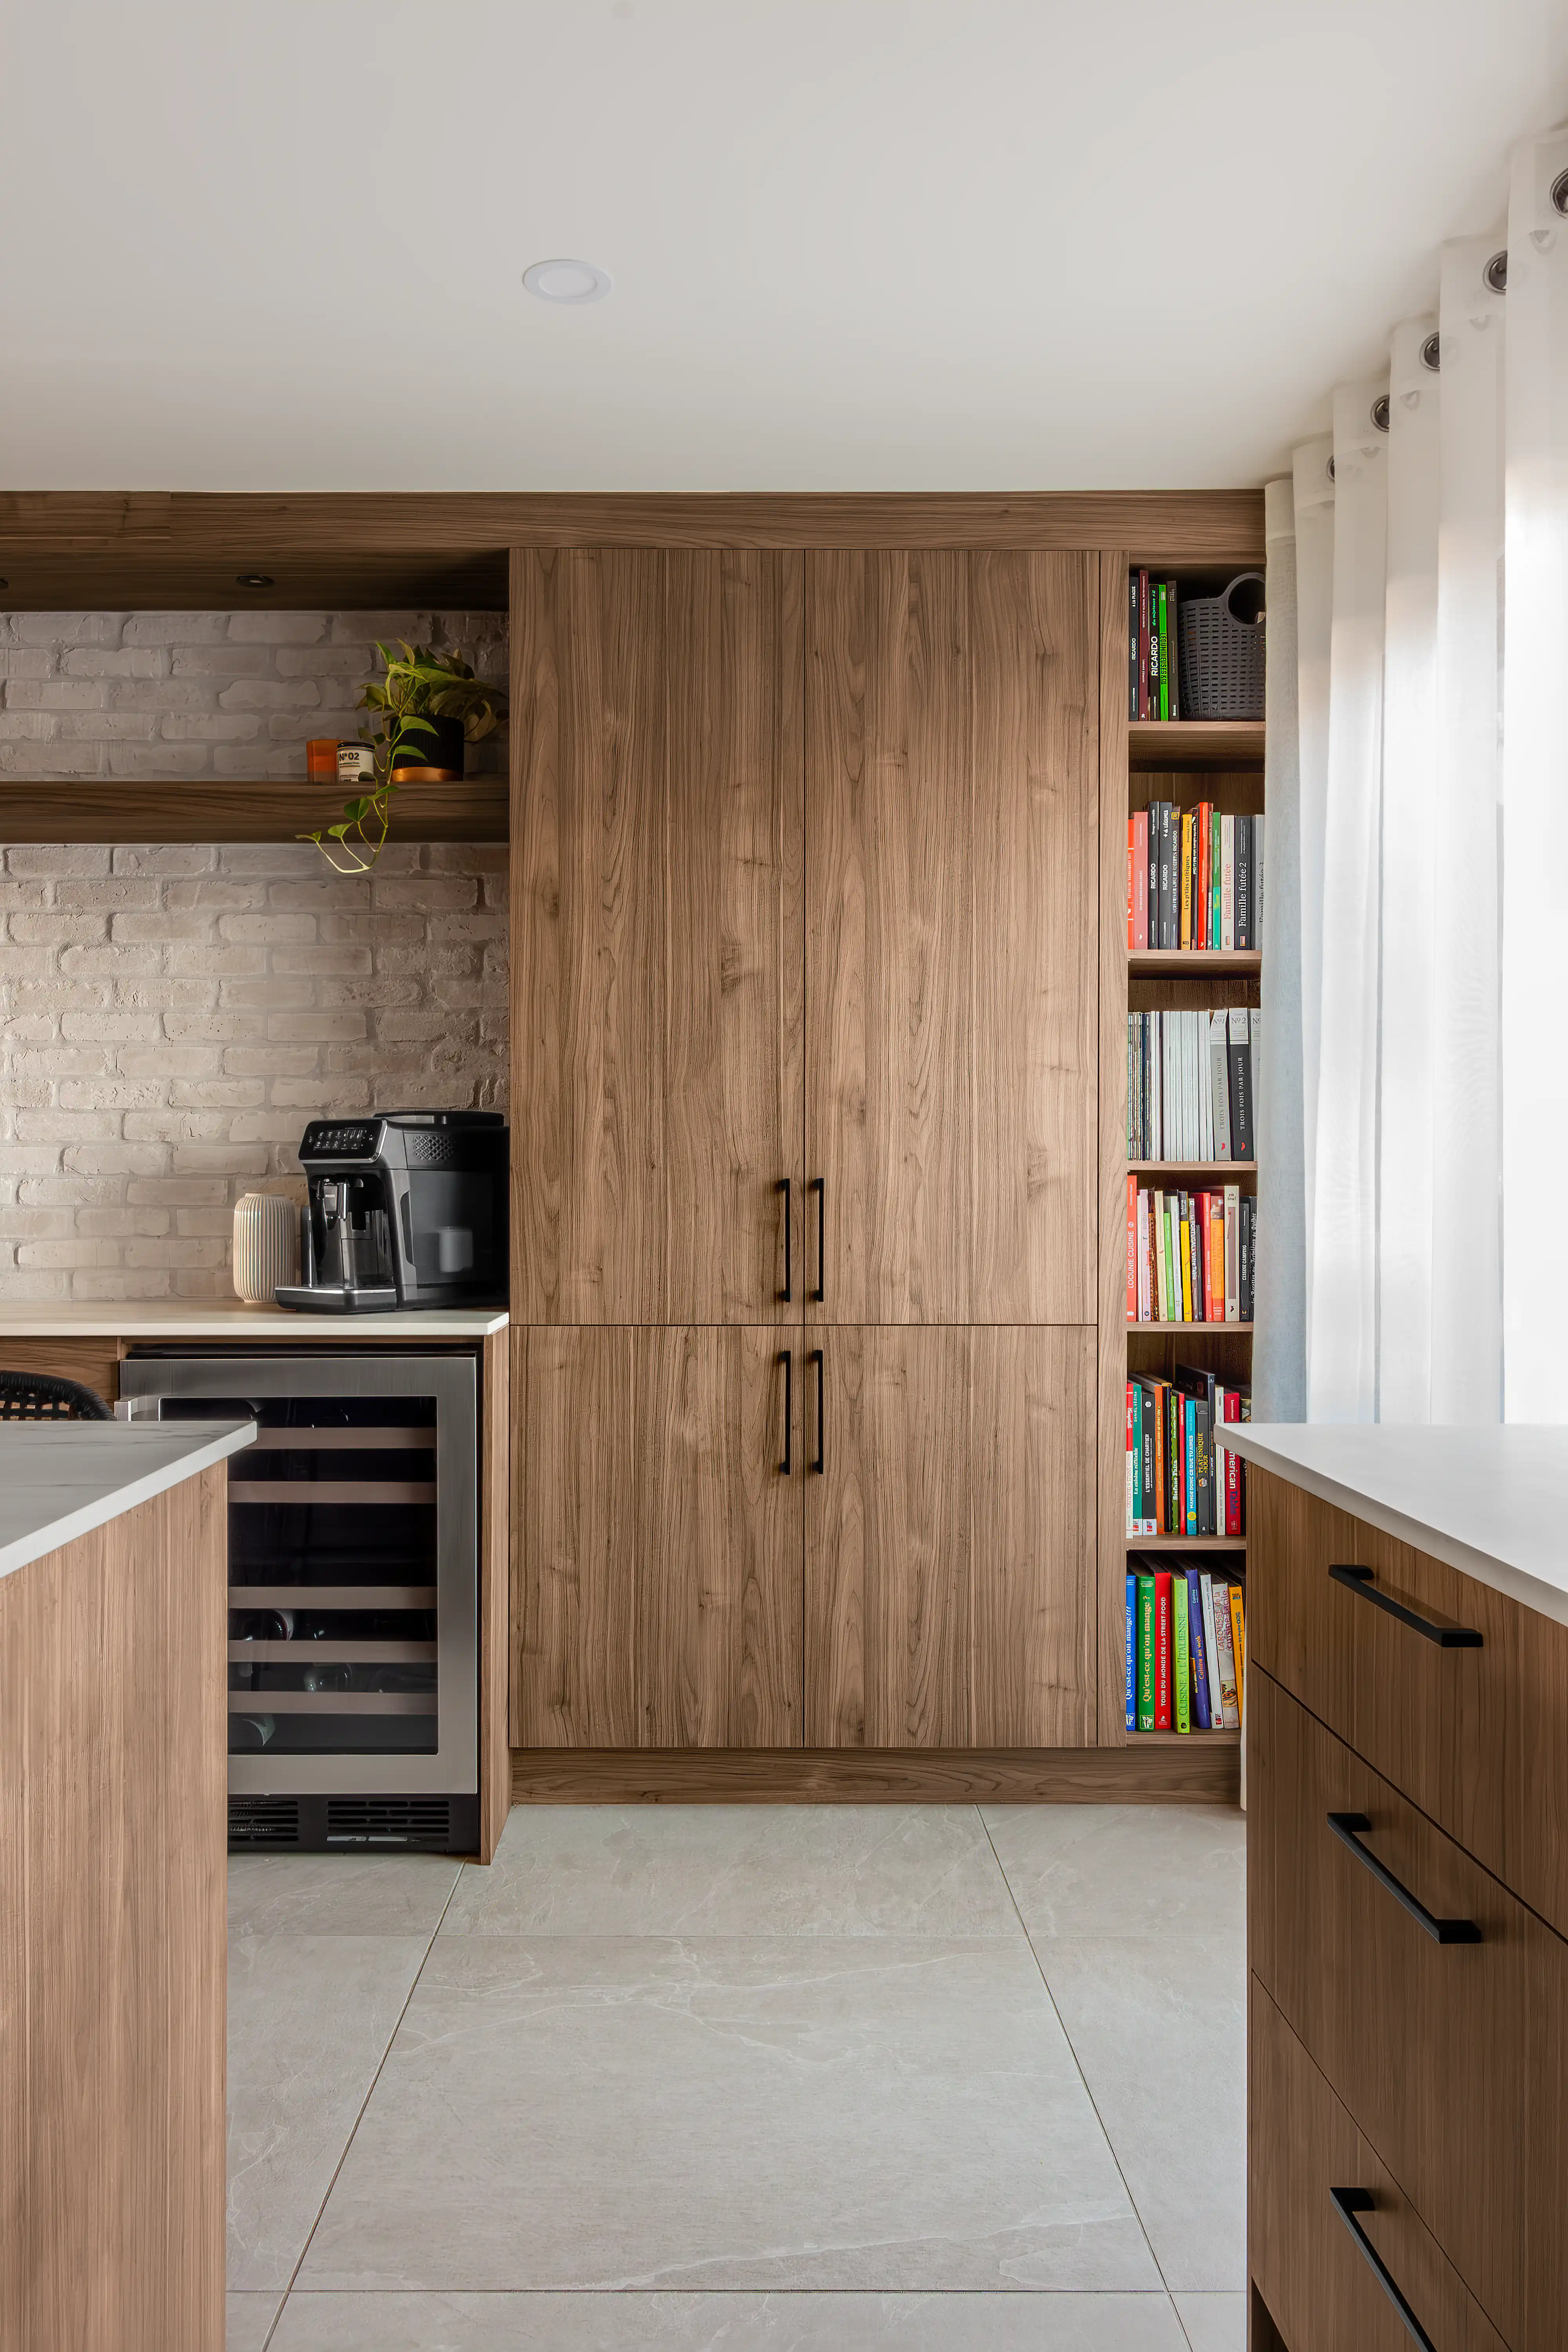 Kitchenette de style scandinave avec des armoires en bois et une bibliothèque intégrée aux appareils électroménagers, intérieur signé Sarah Brown Design